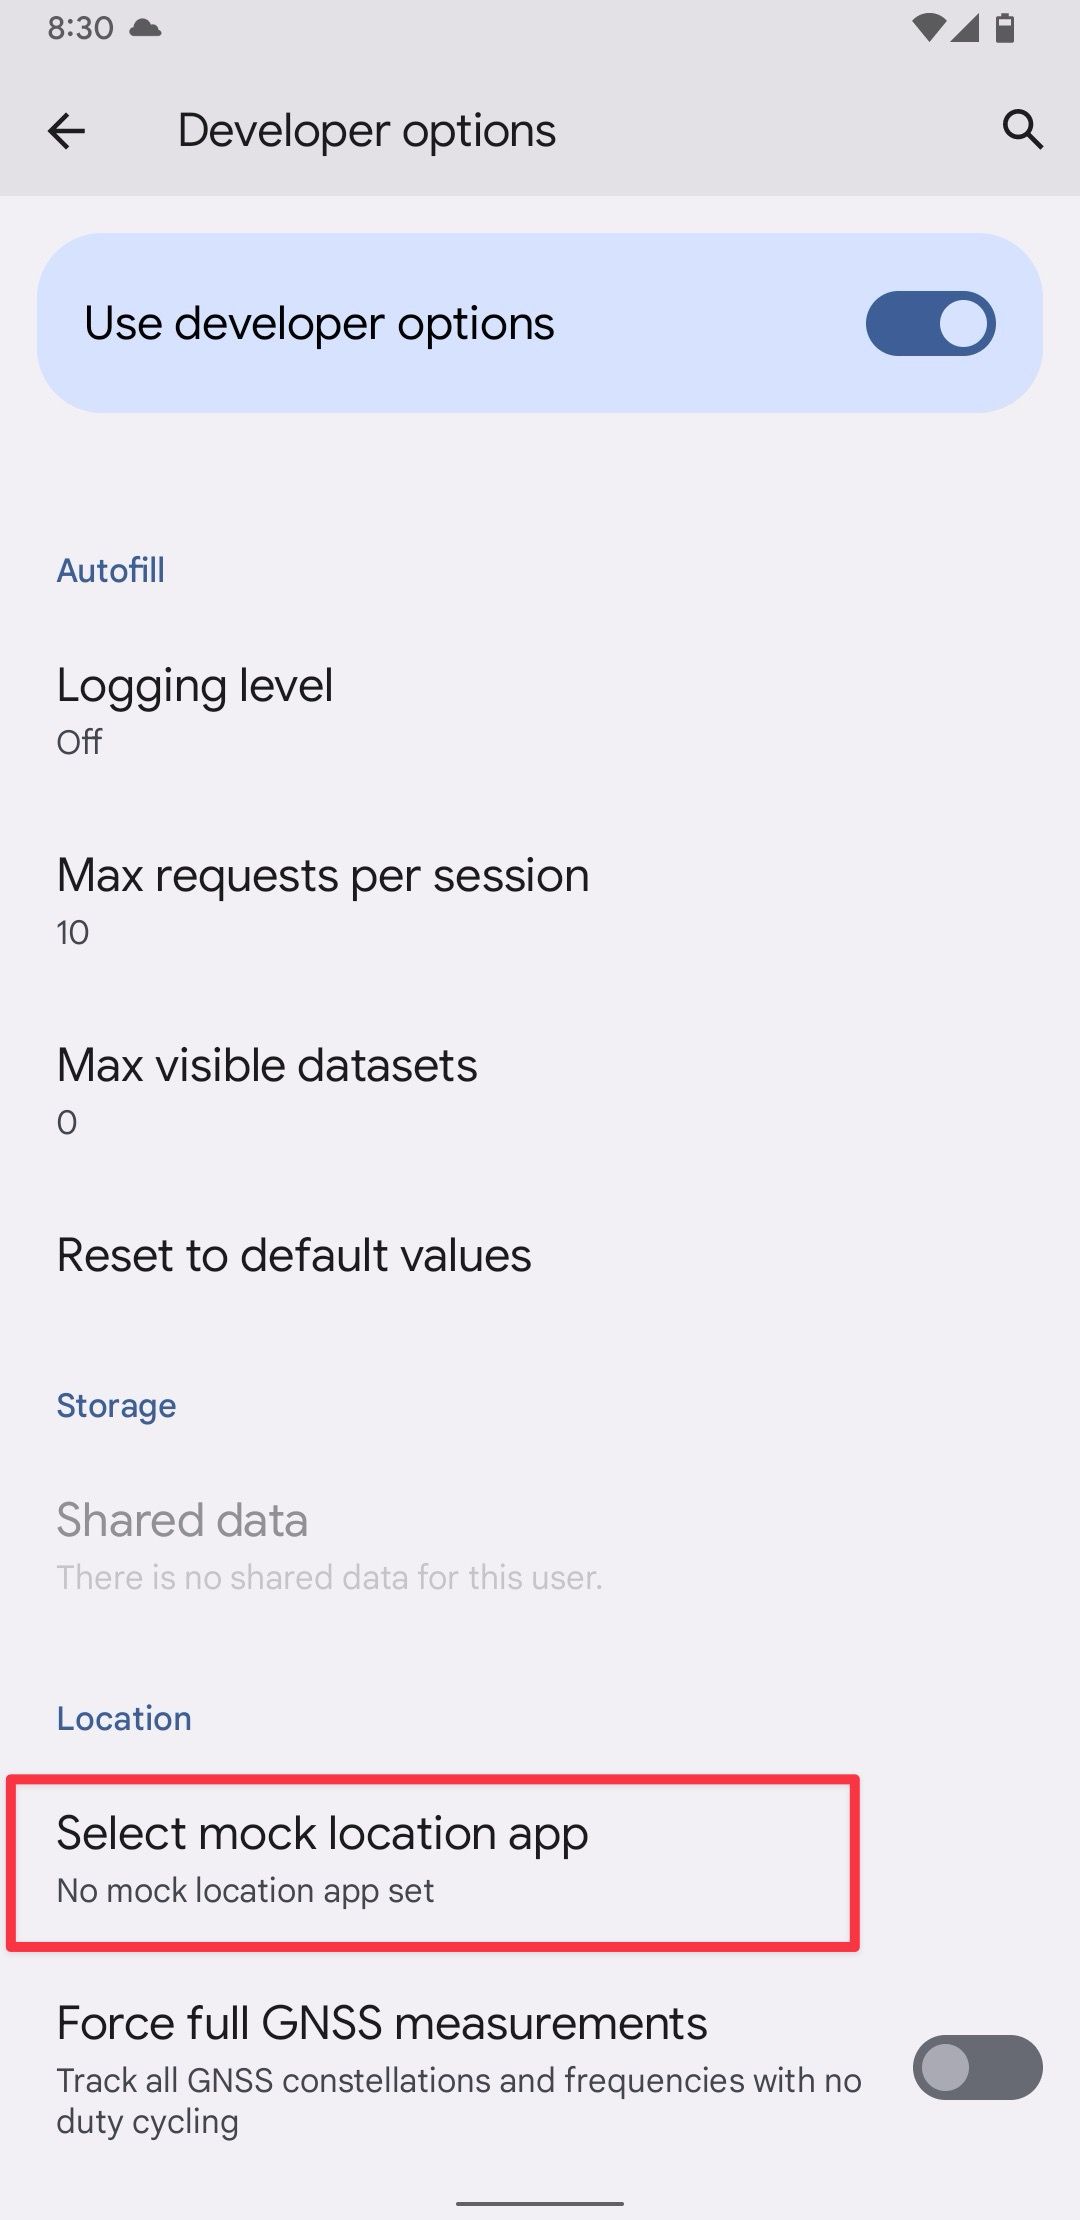 Captura de tela das configurações do Android mostrando a opção de seleção do aplicativo de localização simulada